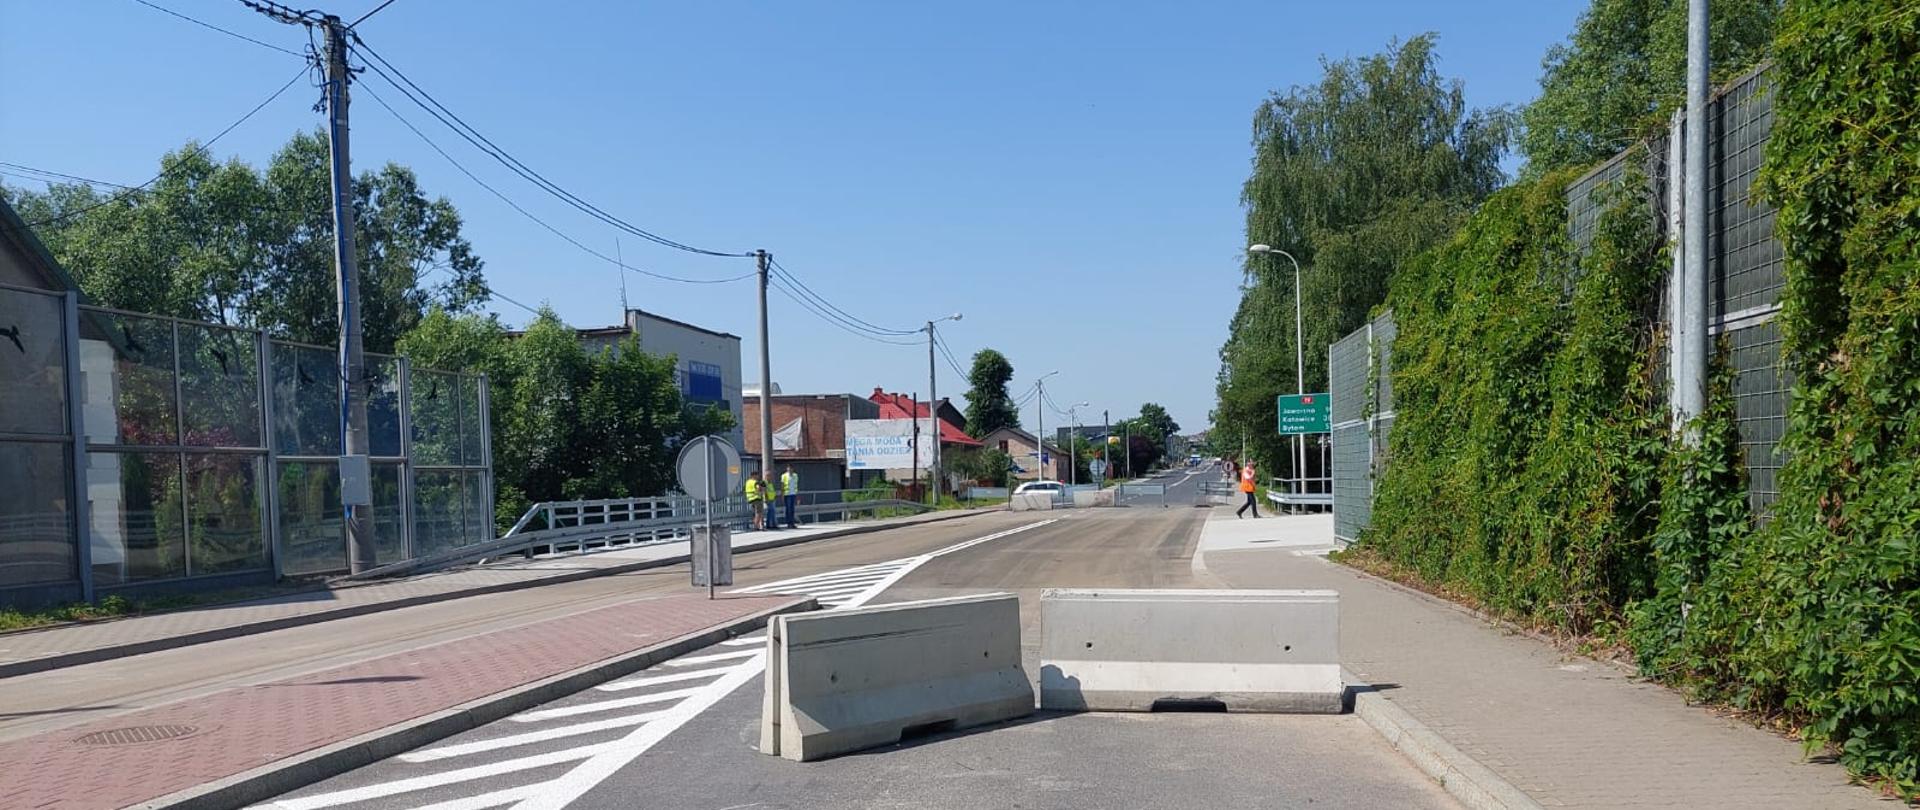 ulica przed mostem w Chrzanowie zagrodzona betonowymi elementami